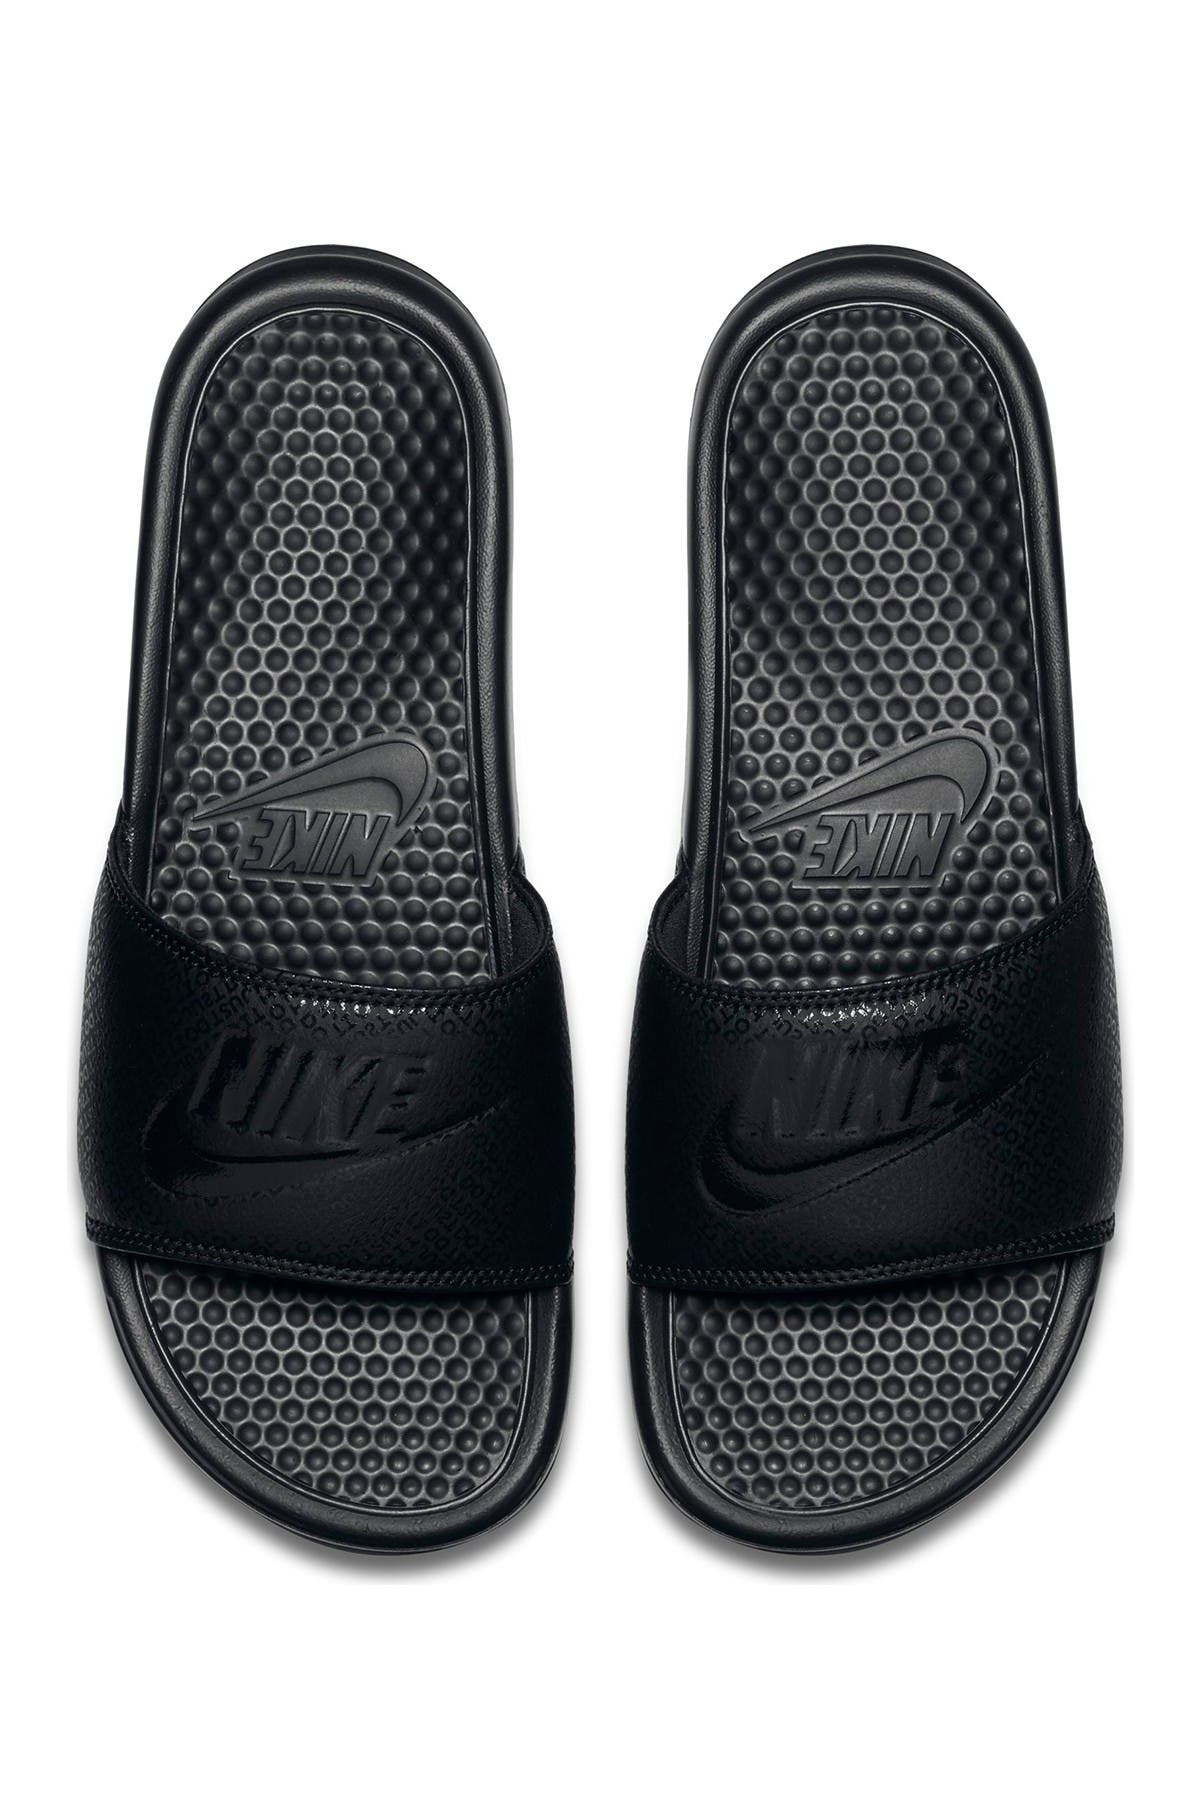 all black nike slippers